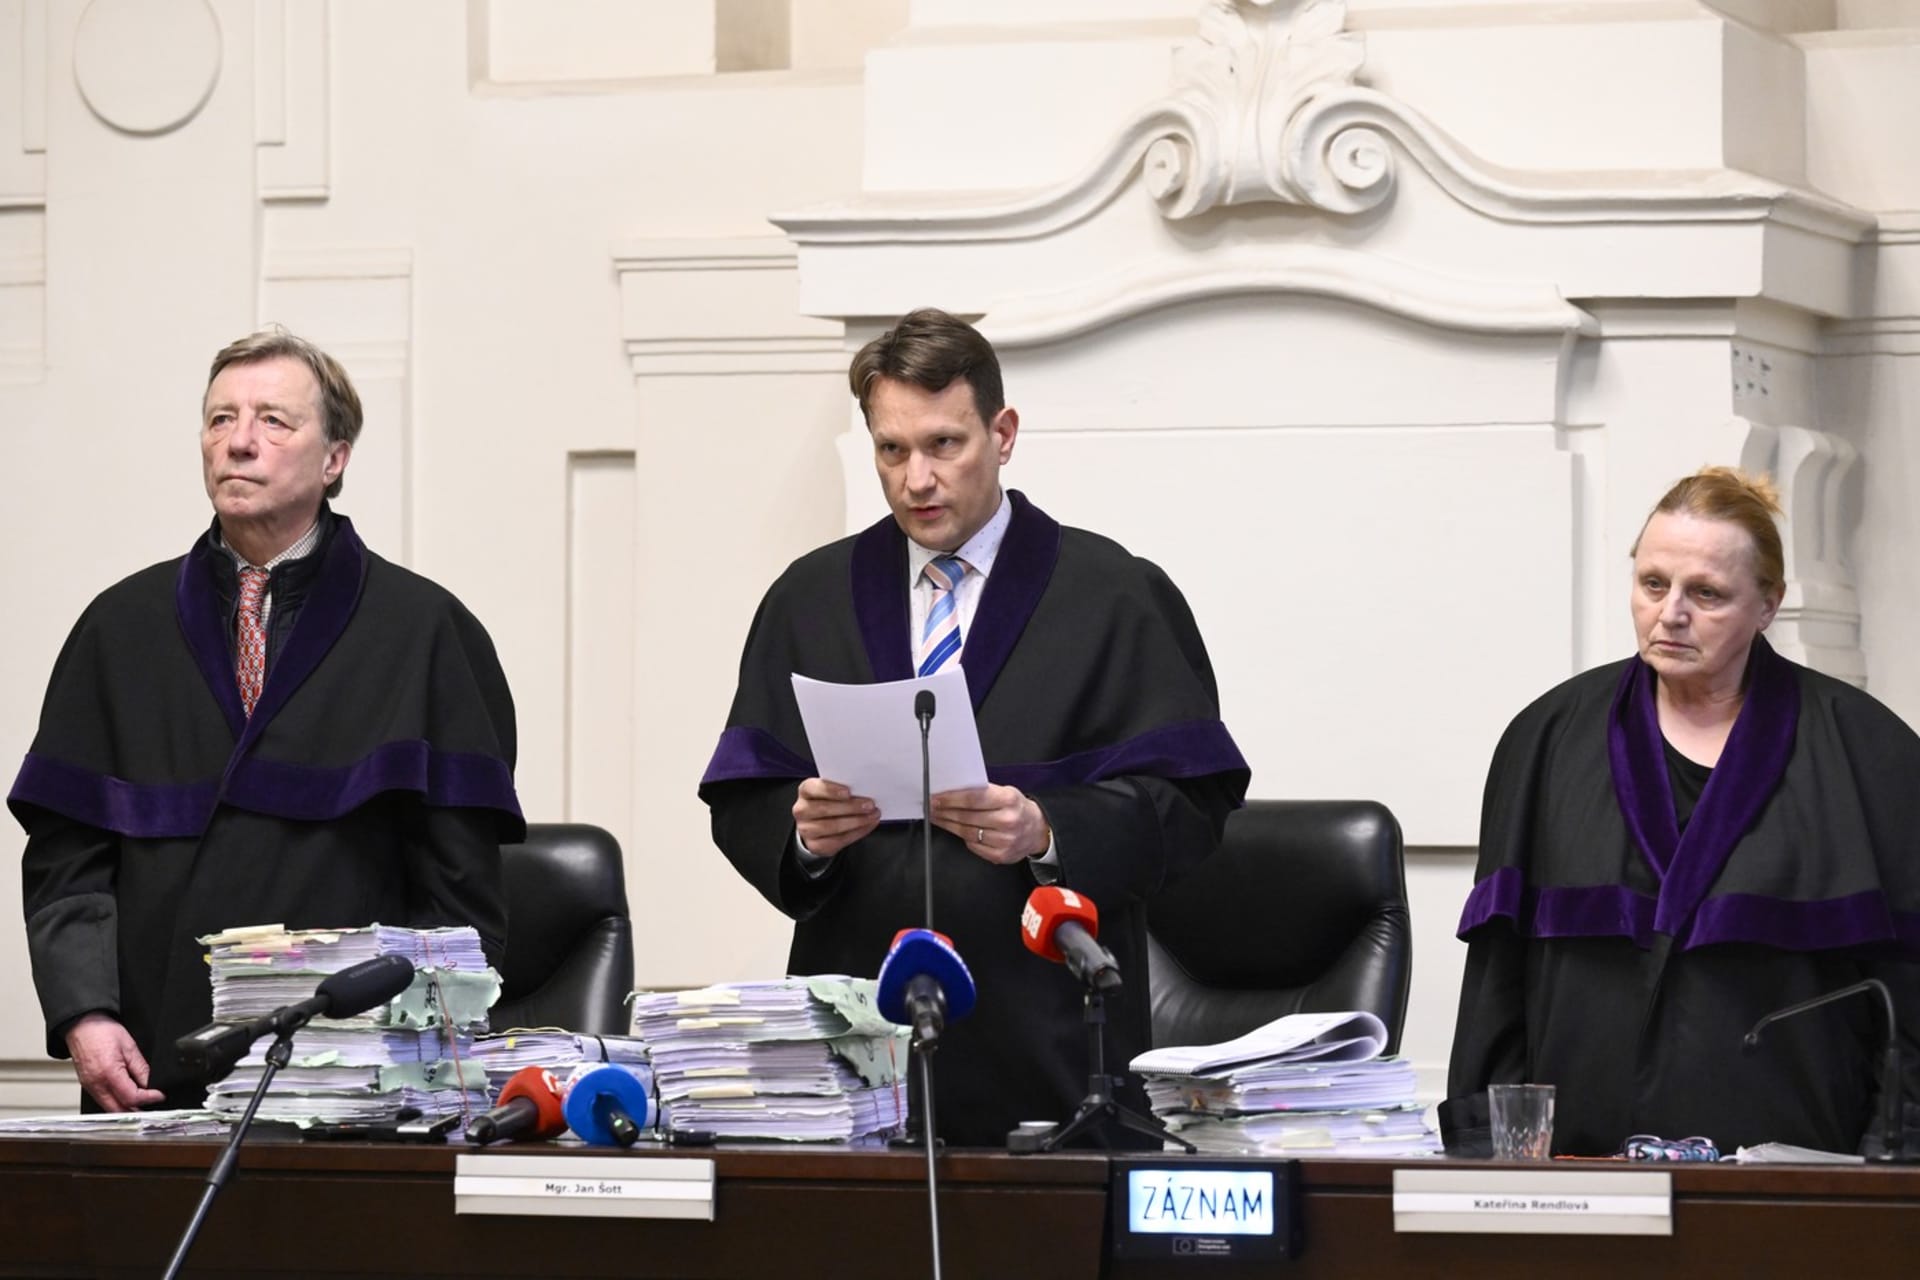 Soudce Jan Šott vynesl verdikt v kauze Čapí hnízdo